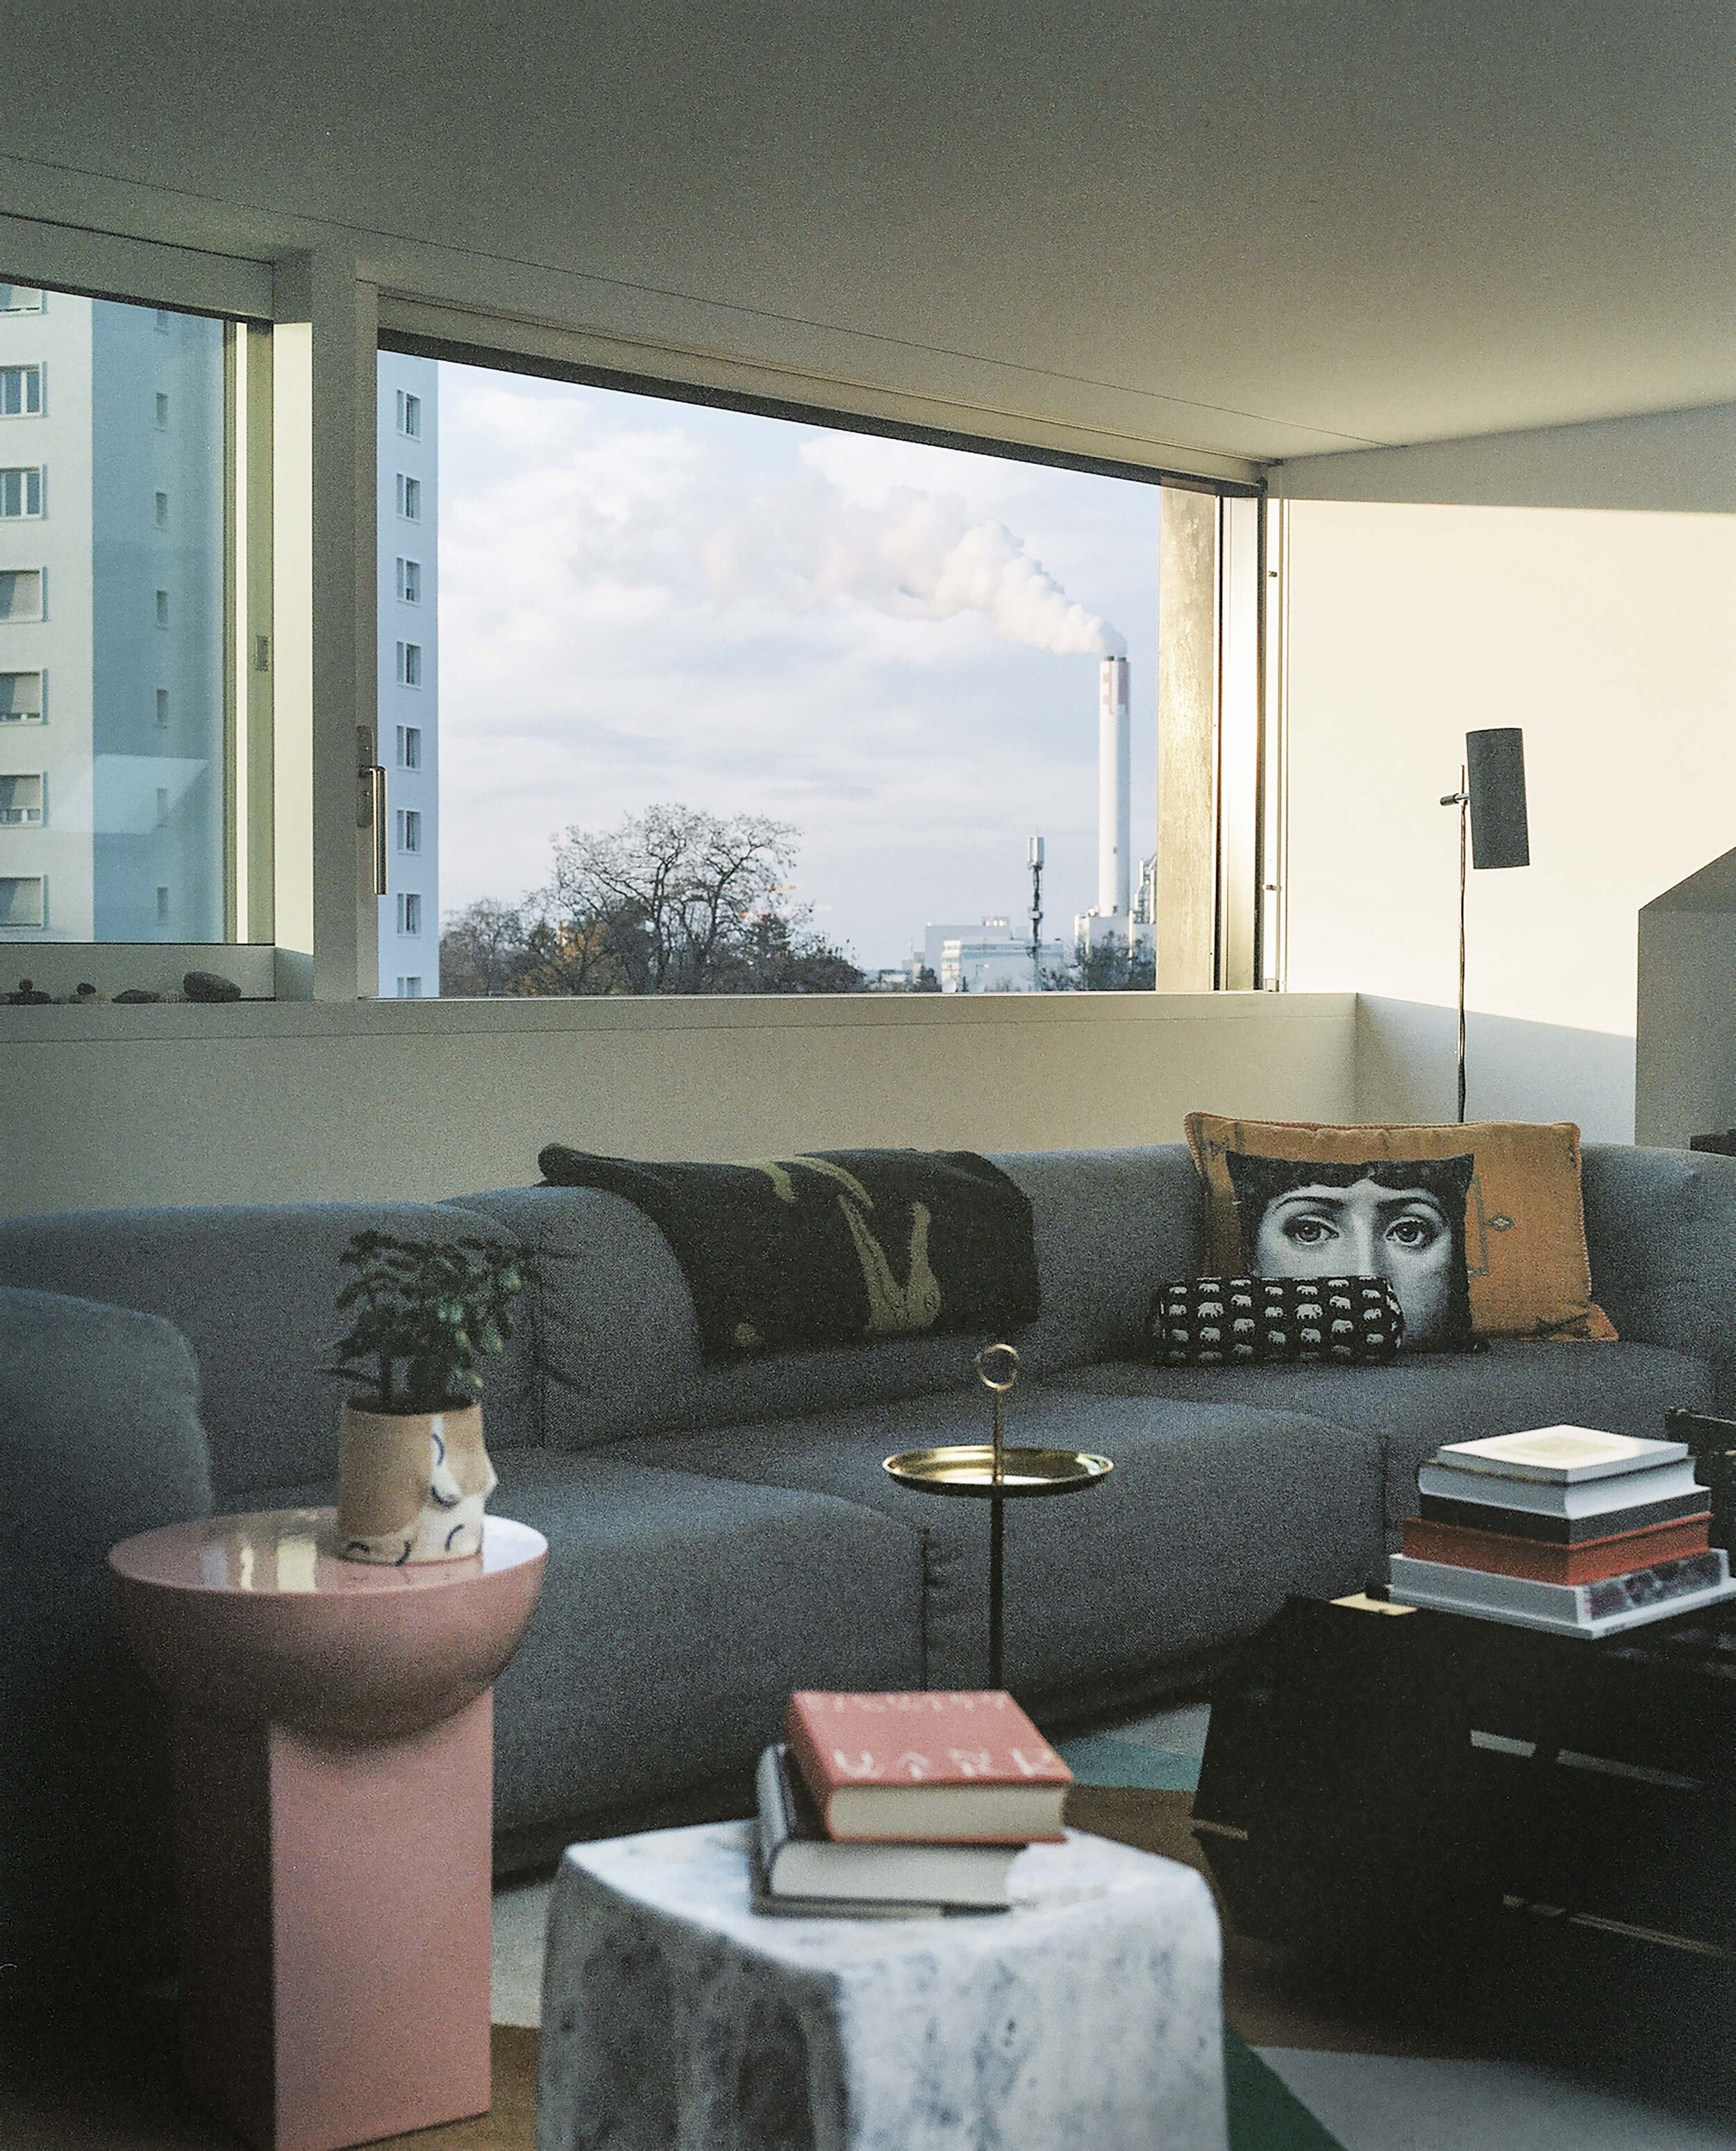 Apartment Von Bartha, Basel, 2019